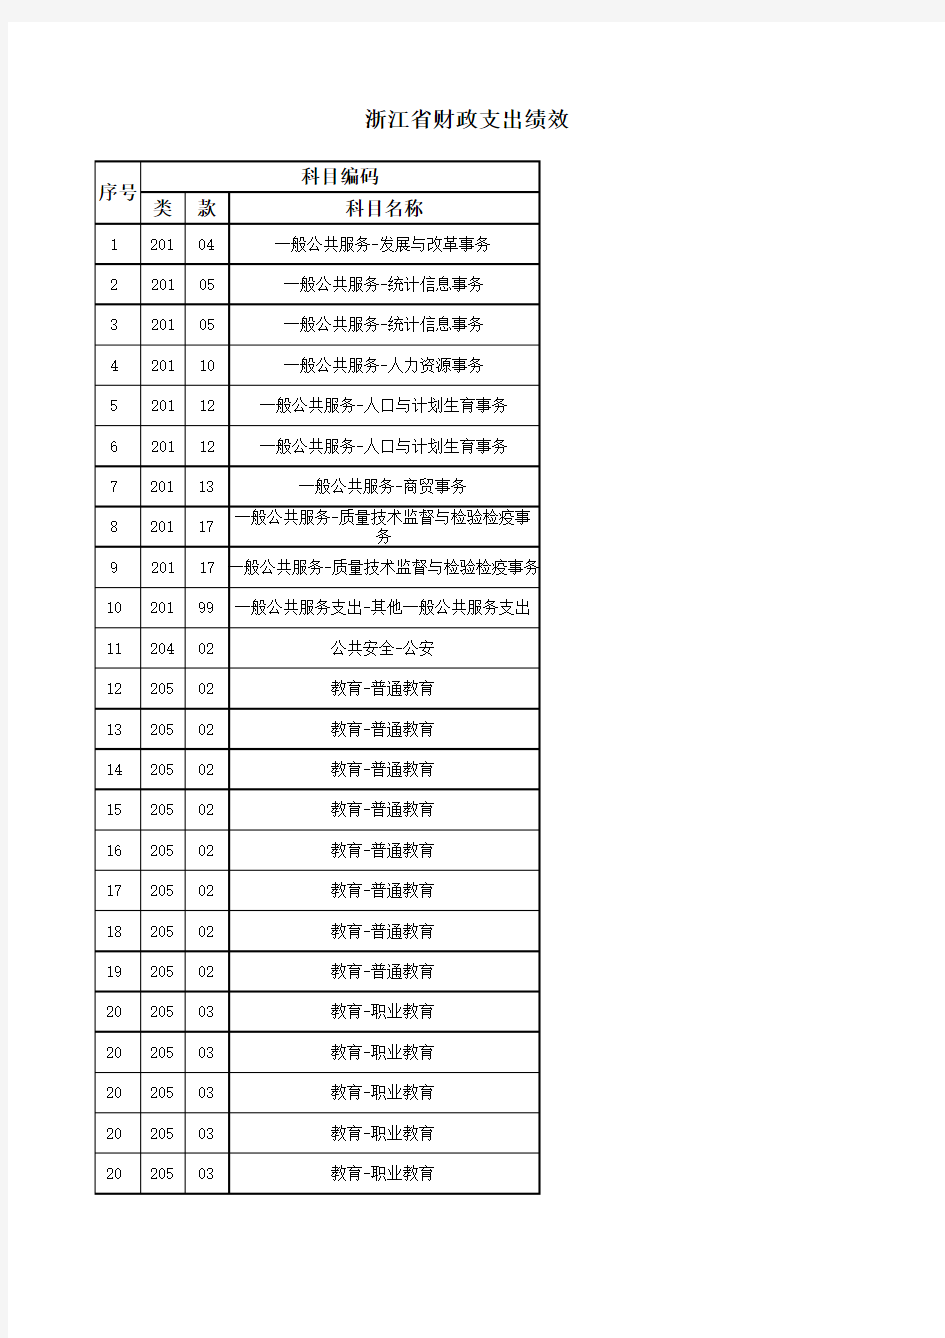 浙江省绩效评价指标体系2011版